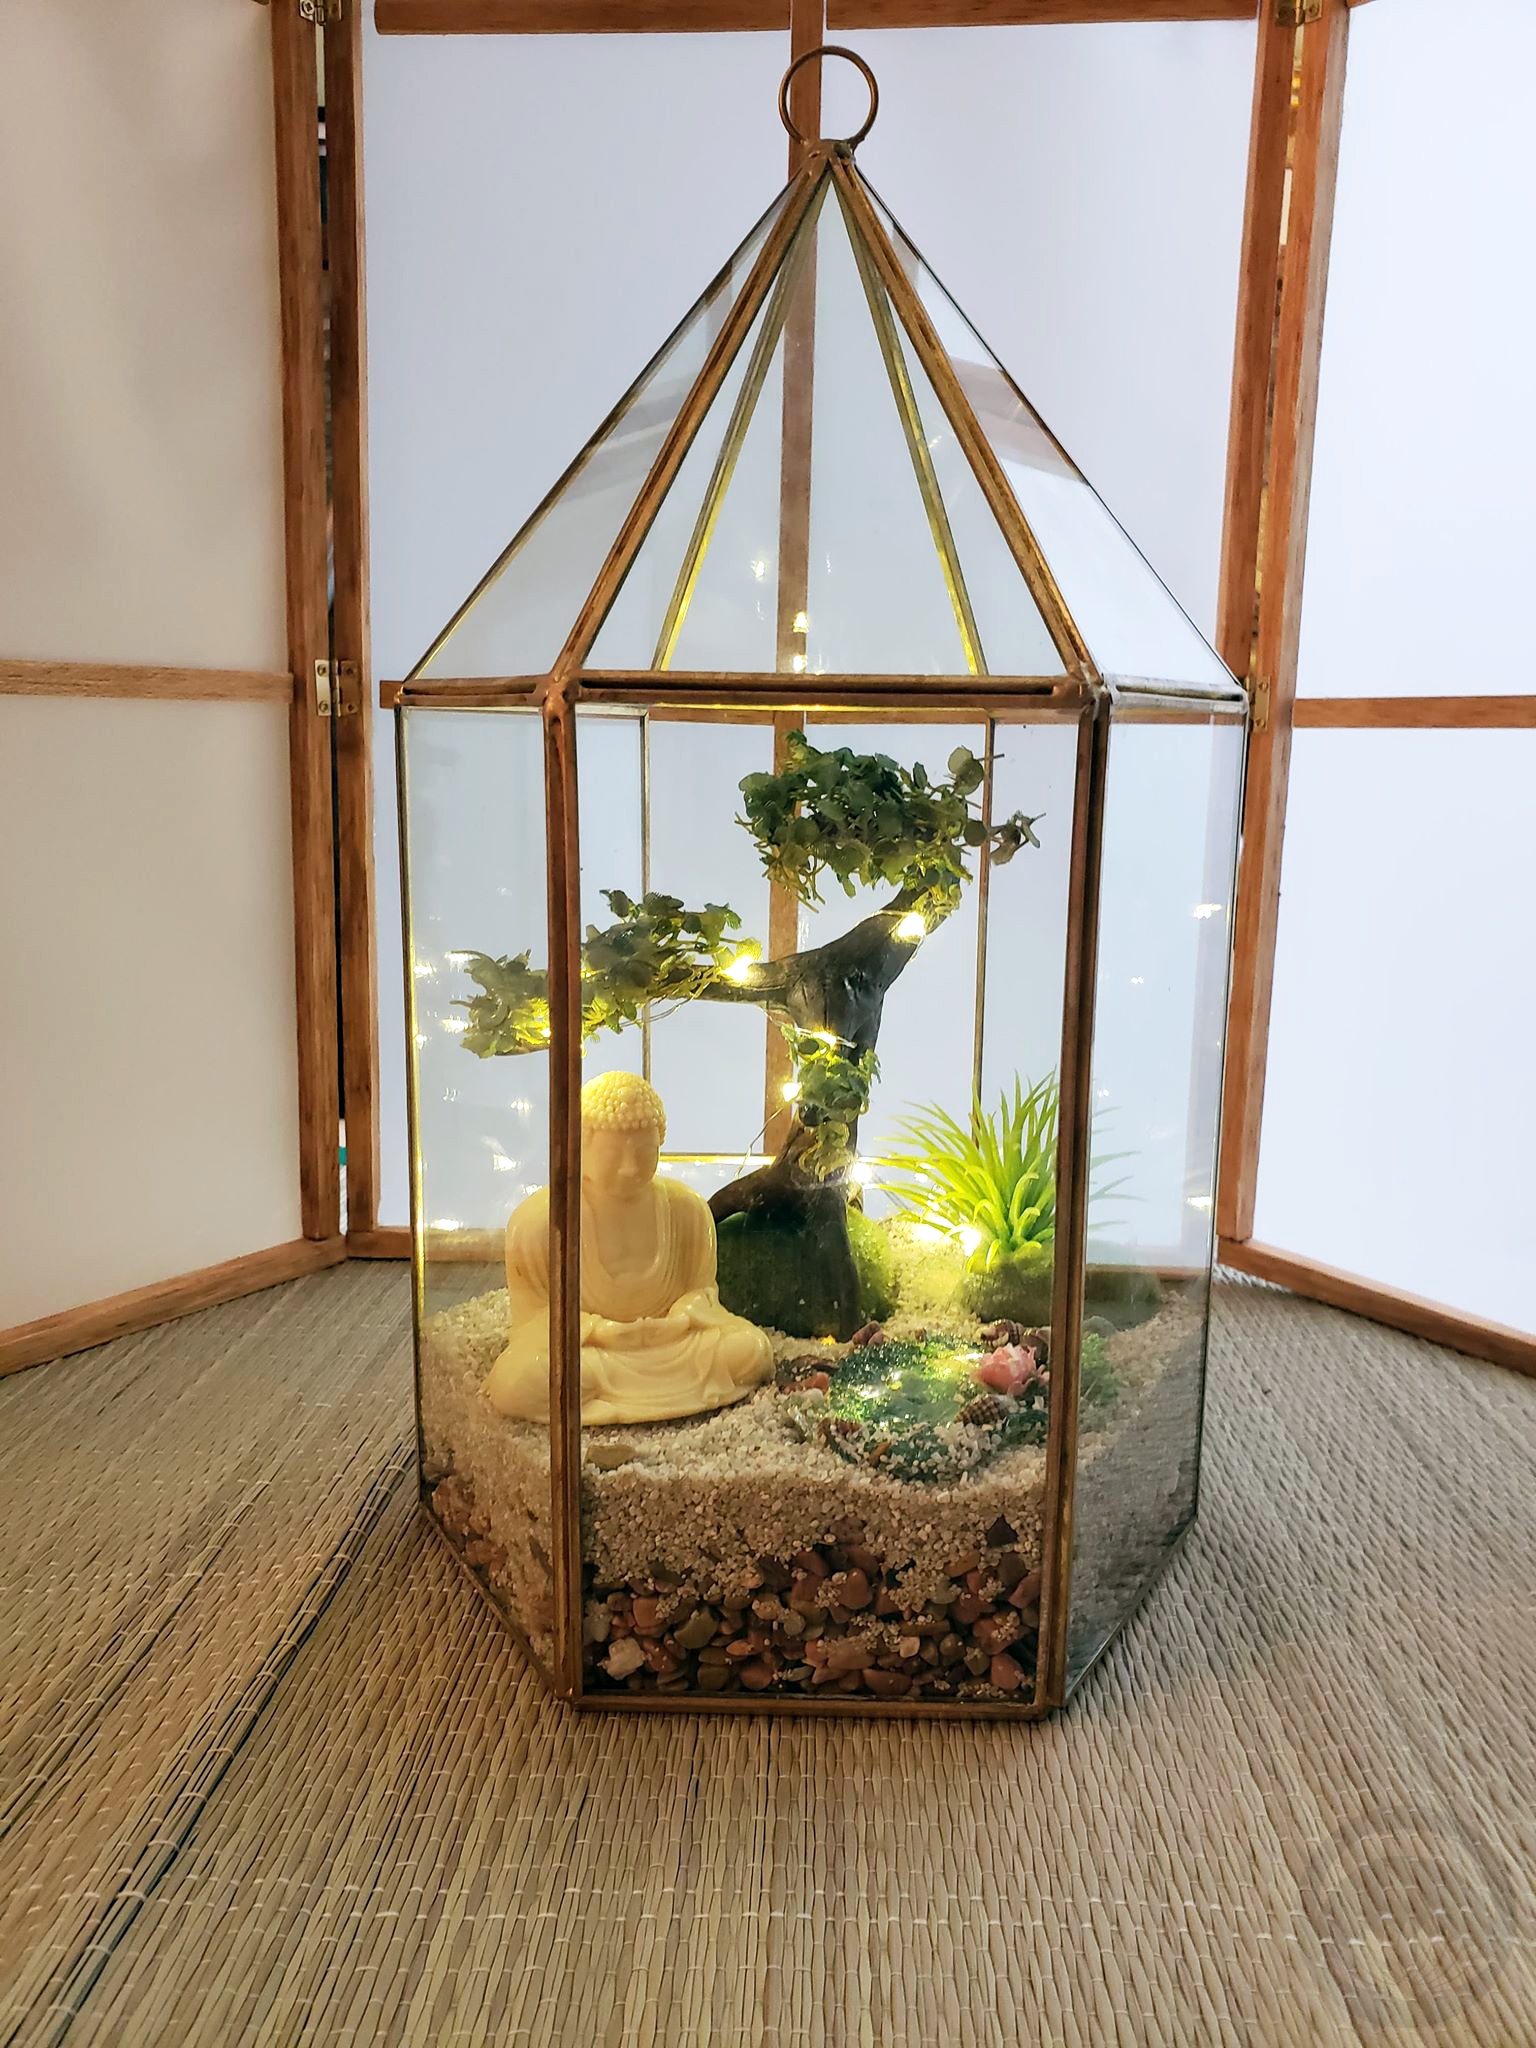 Little Japan Diorama Box 